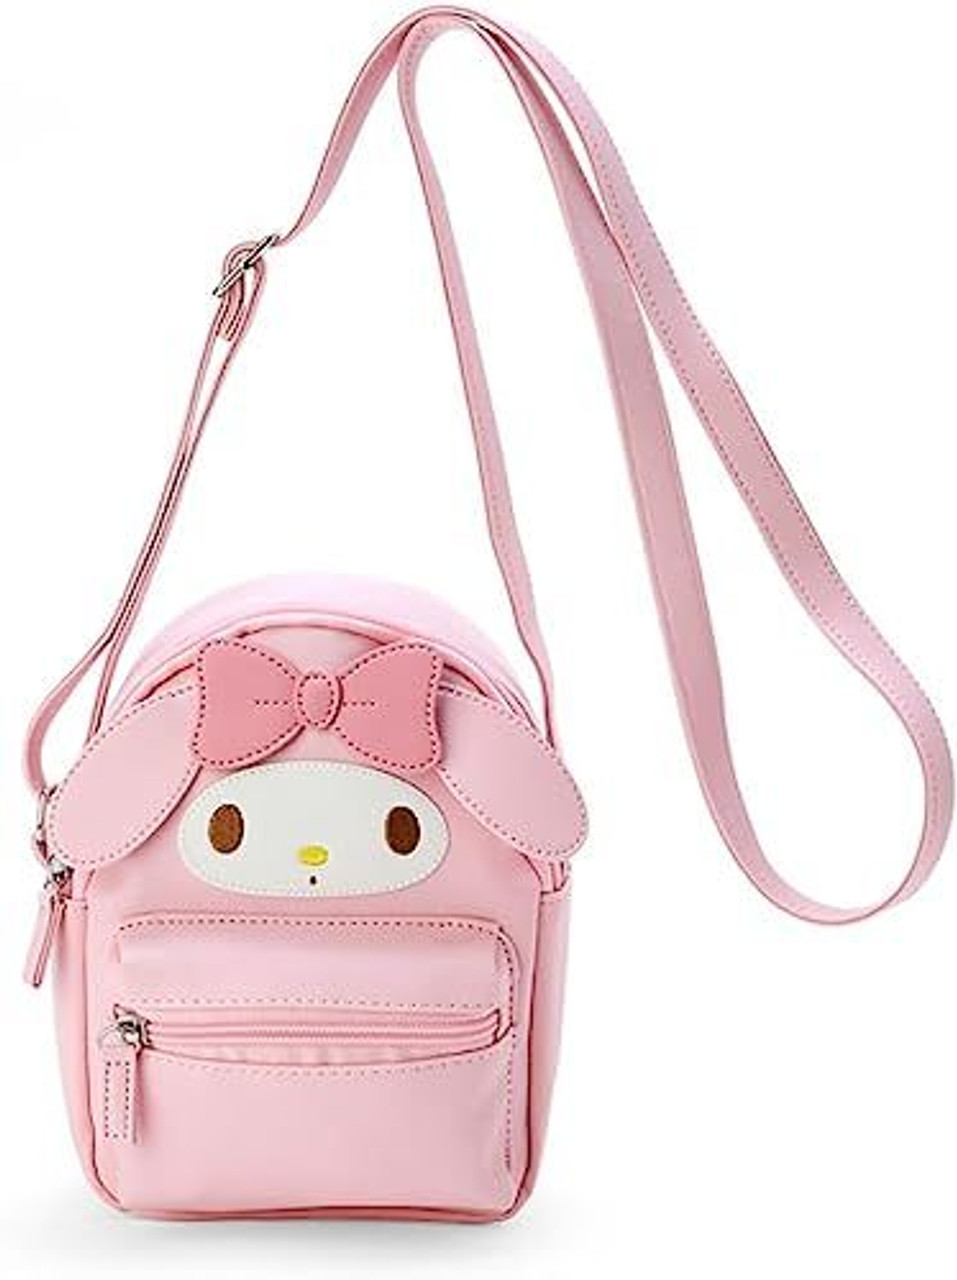 Sanrio Shoulder Bag - My Melody